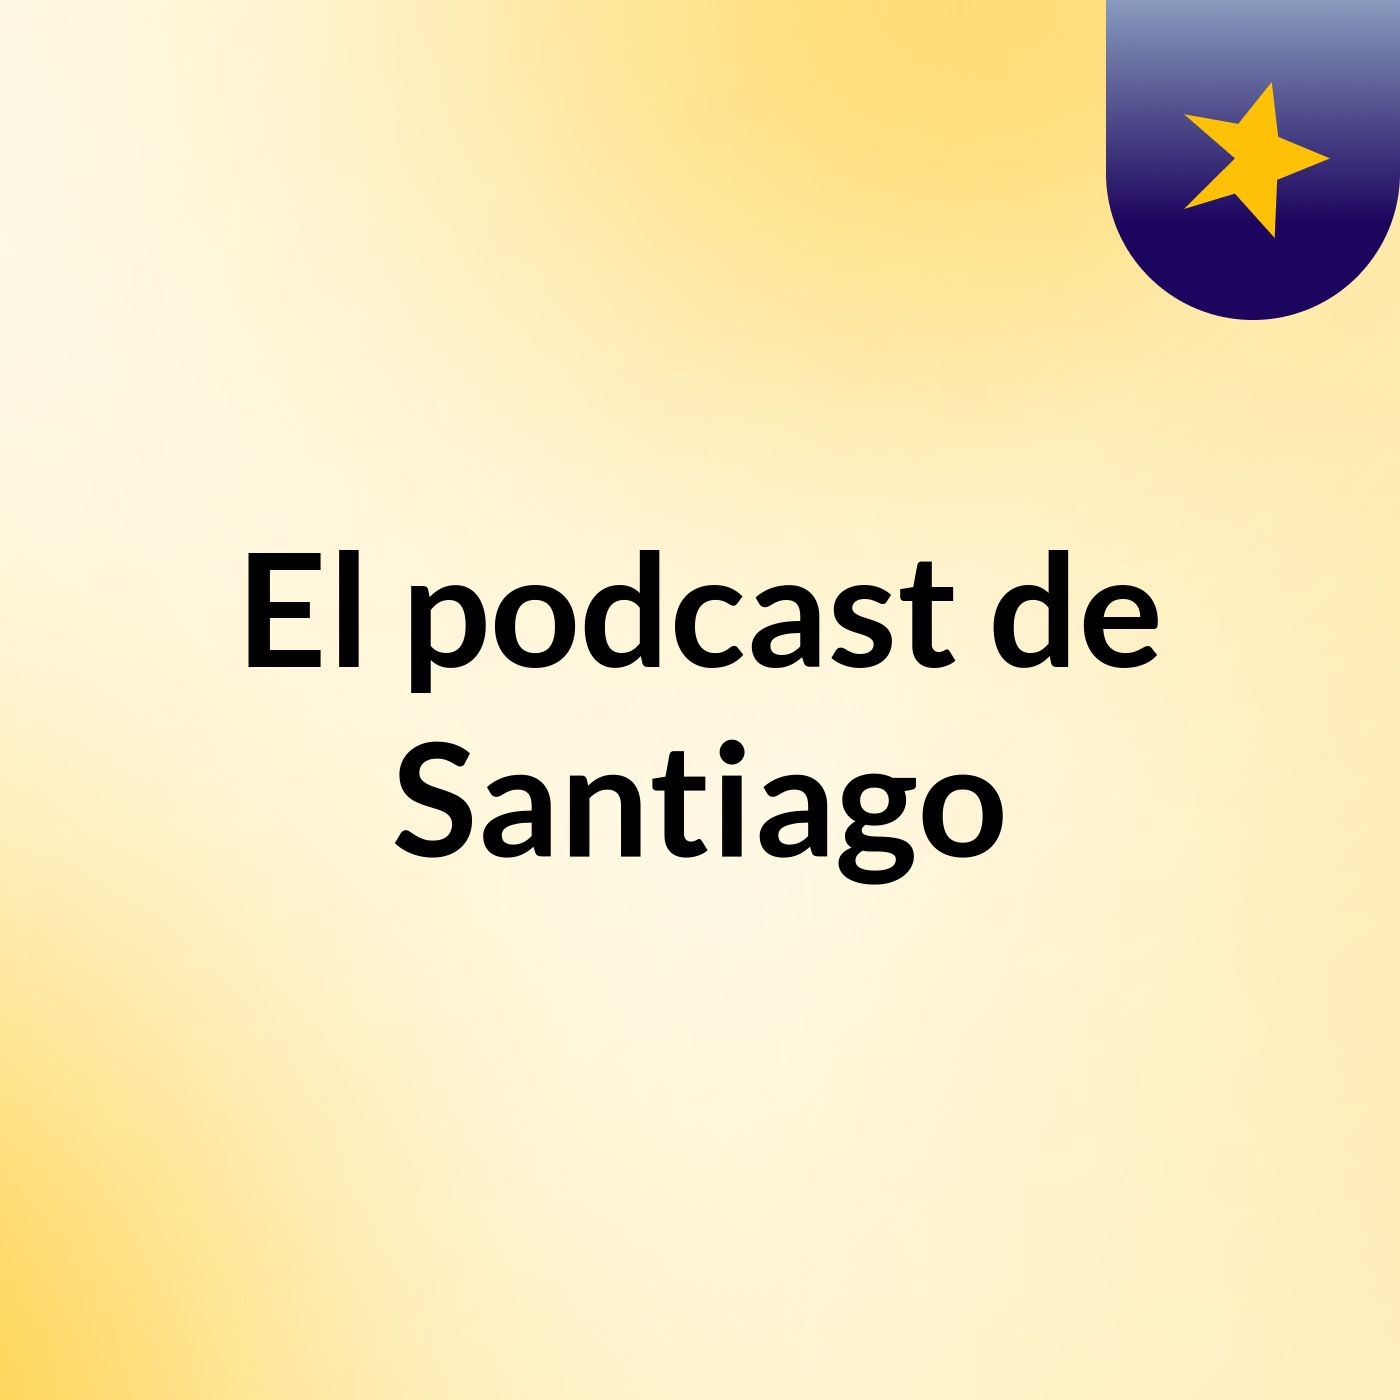 El podcast de Santiago